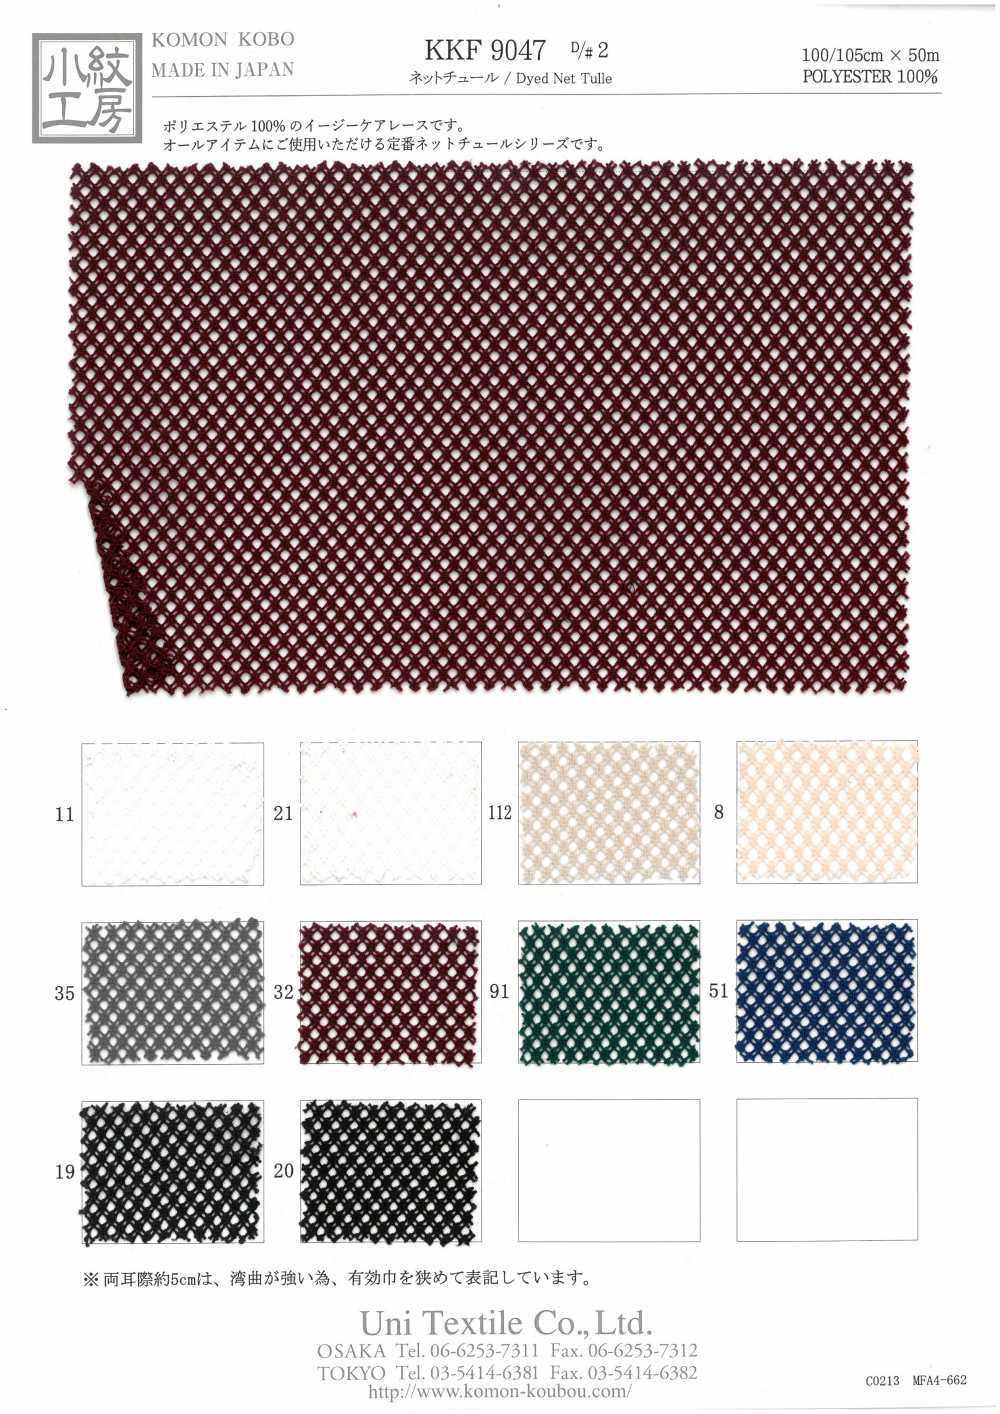 KKF9047-D/2 Netz Tüll[Textilgewebe] Uni Textile